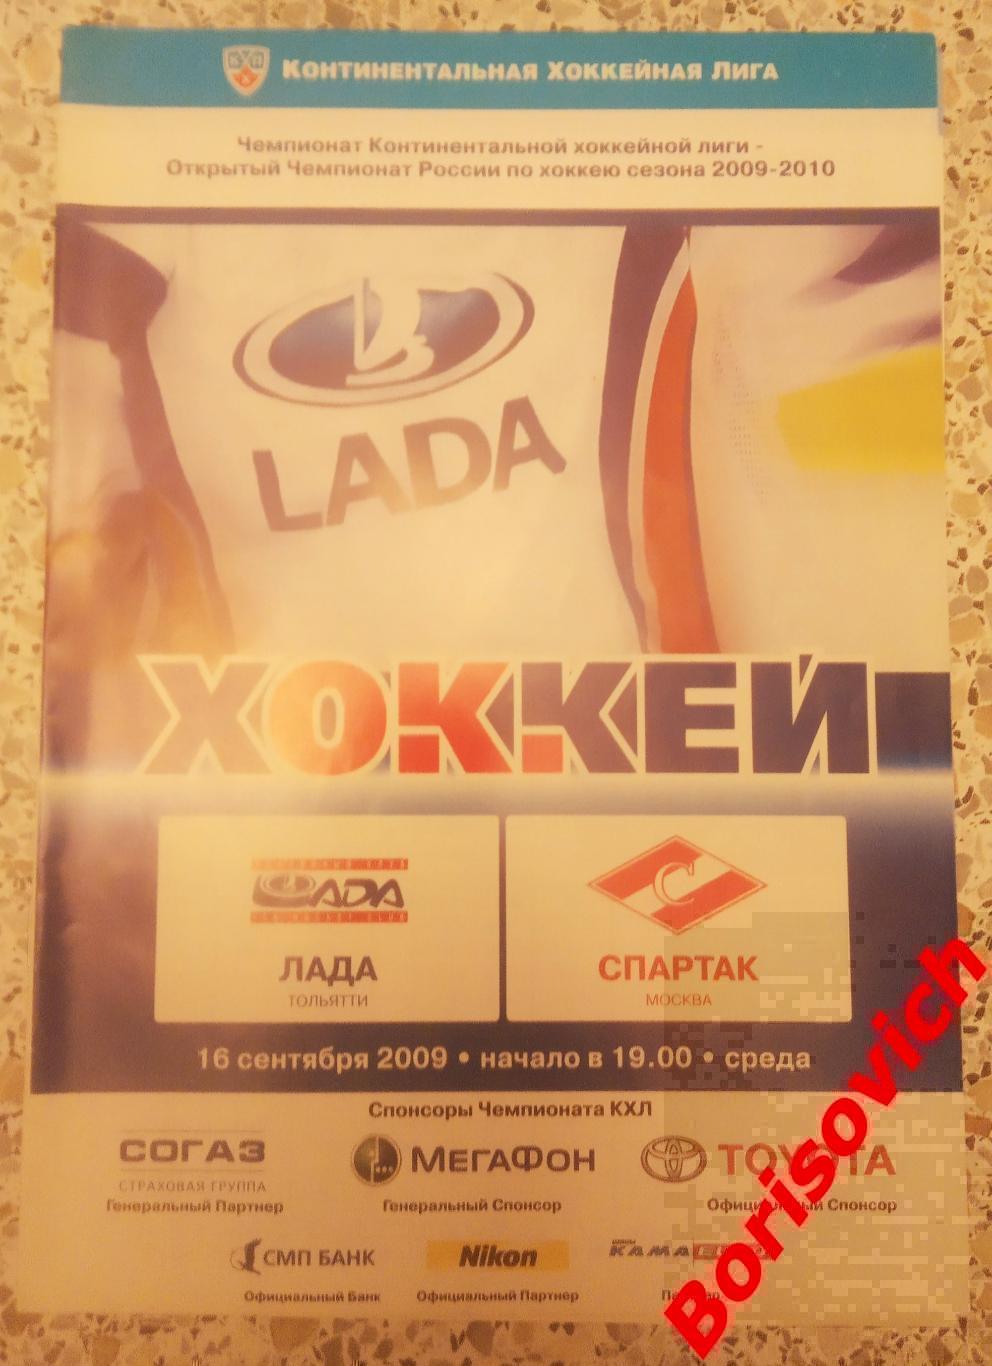 Лада Тольятти - Спартак Москва 16-09-2009